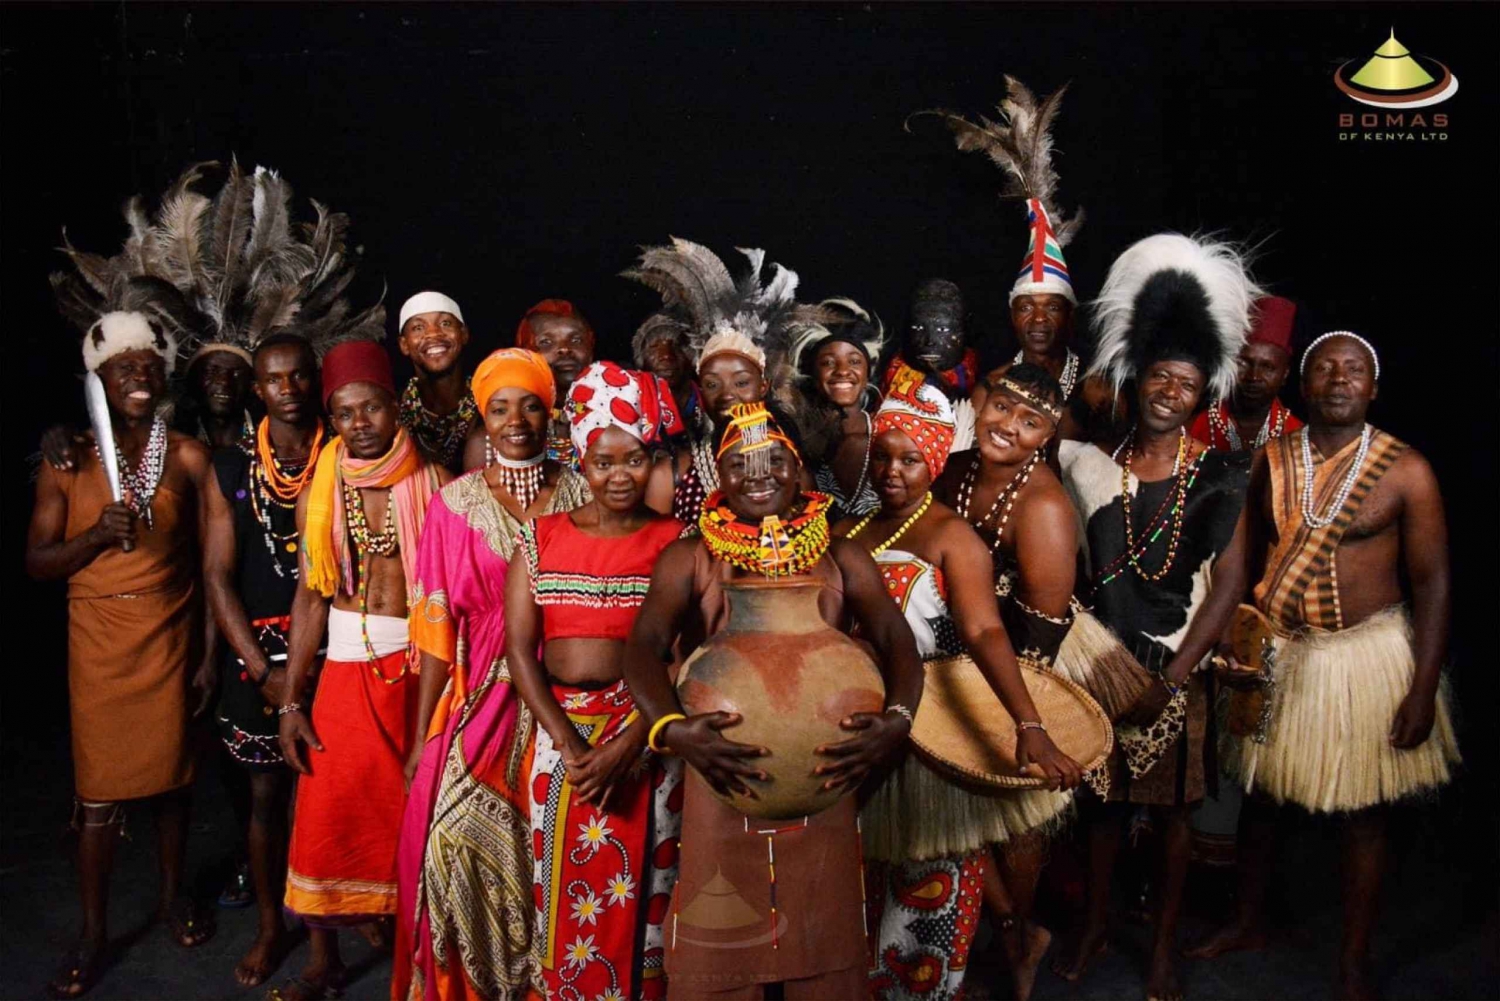 Esperienza culturale Bomas of Kenya